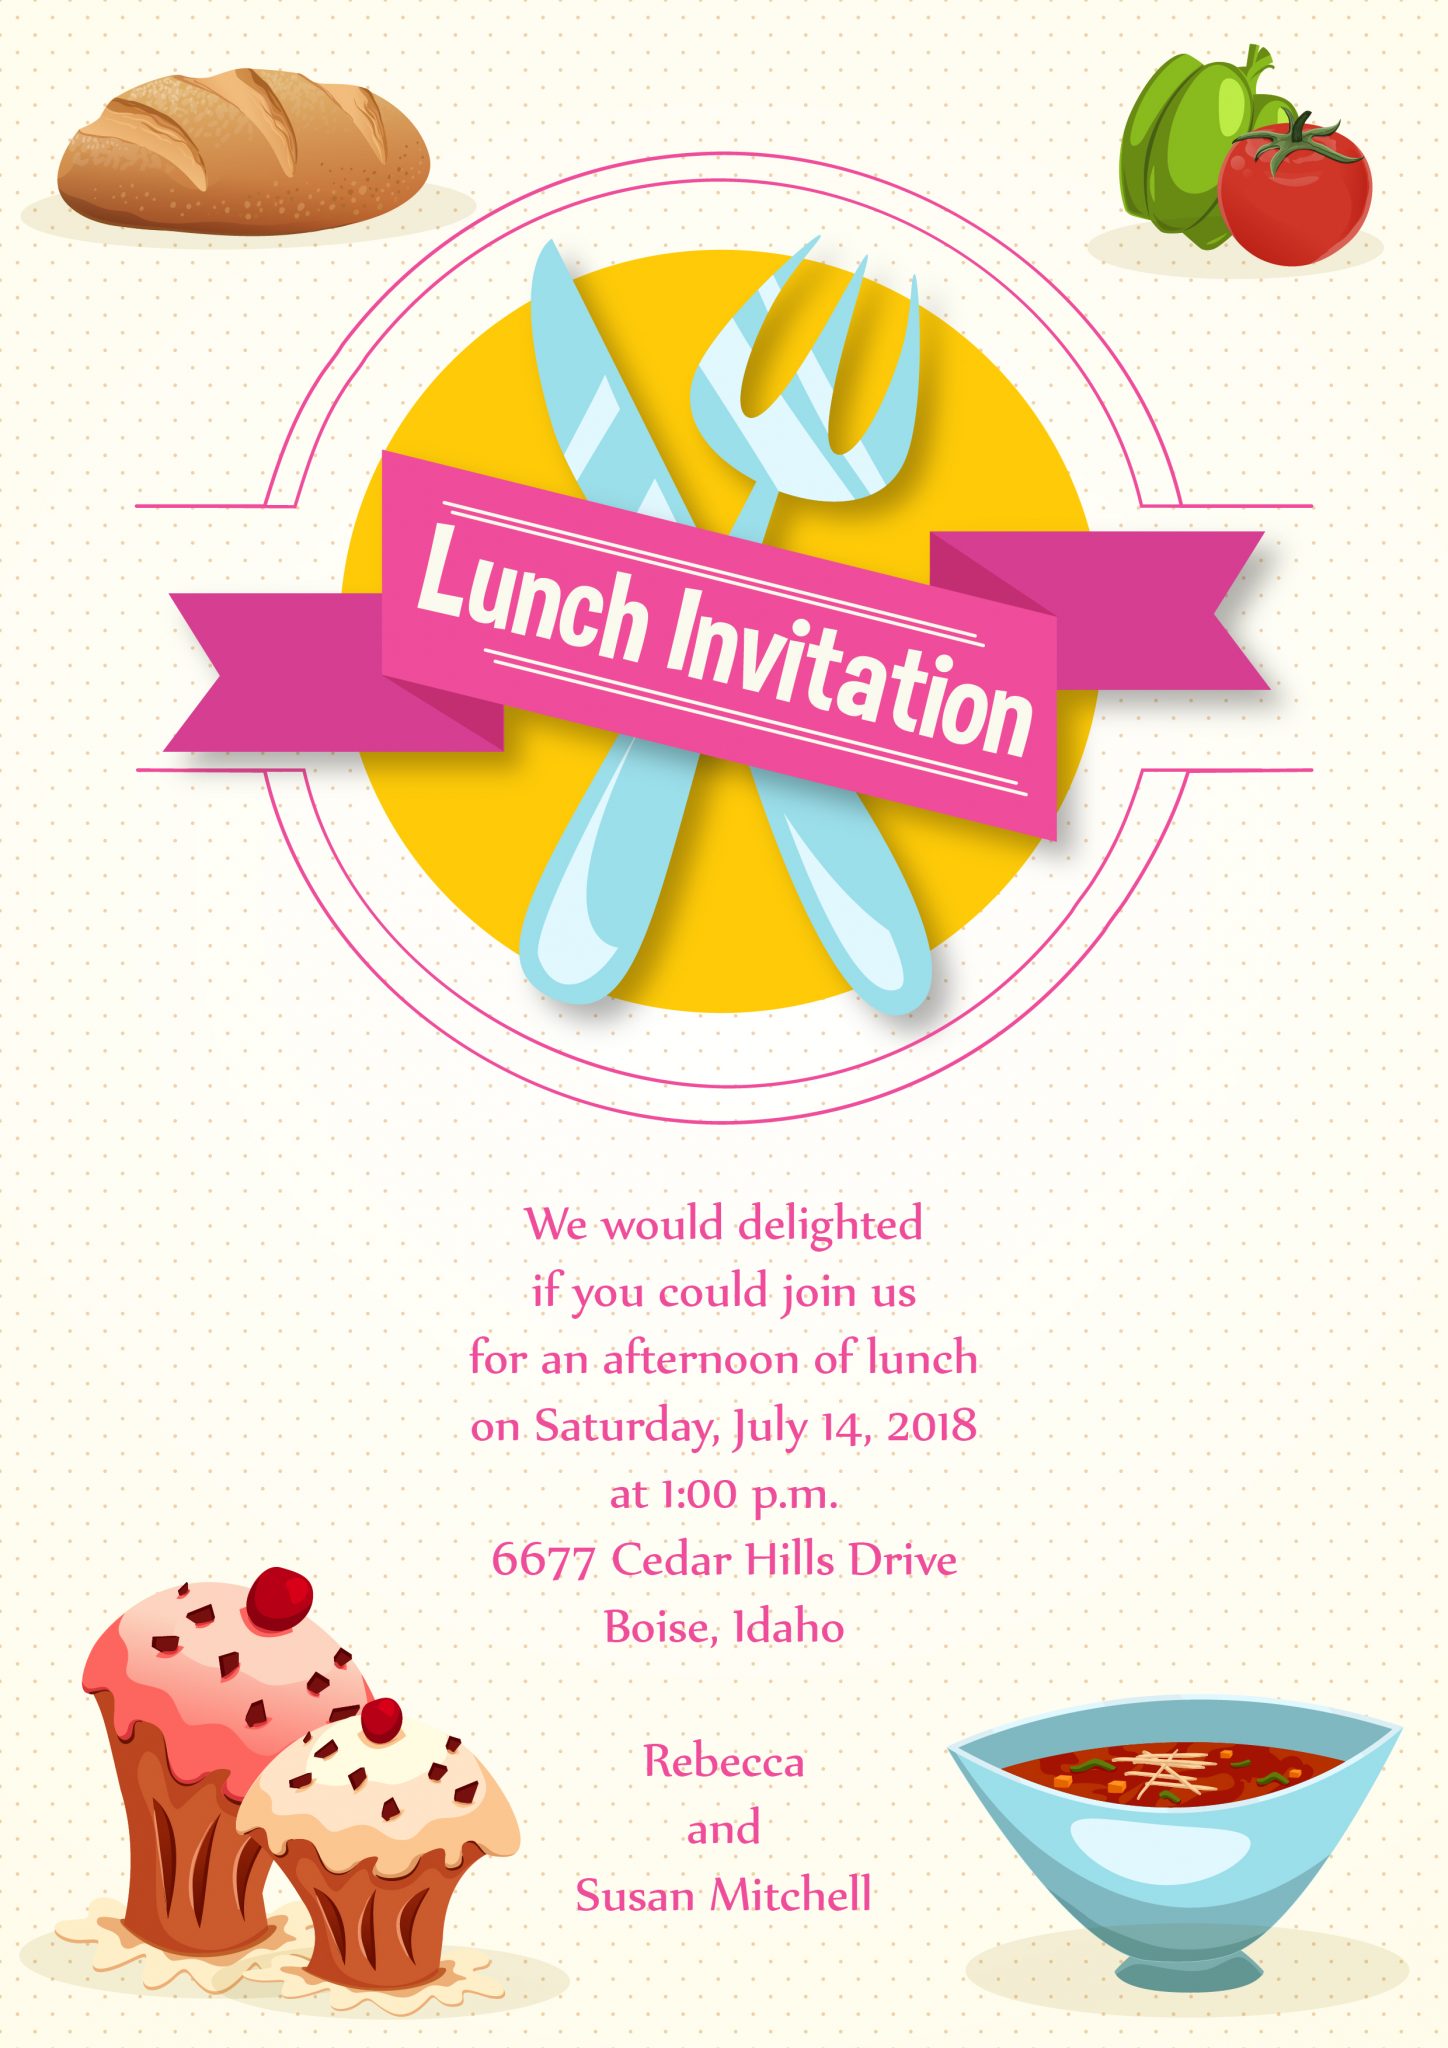 Amazing Invitation Vector: Lunch Invitation Vector Invitation Template